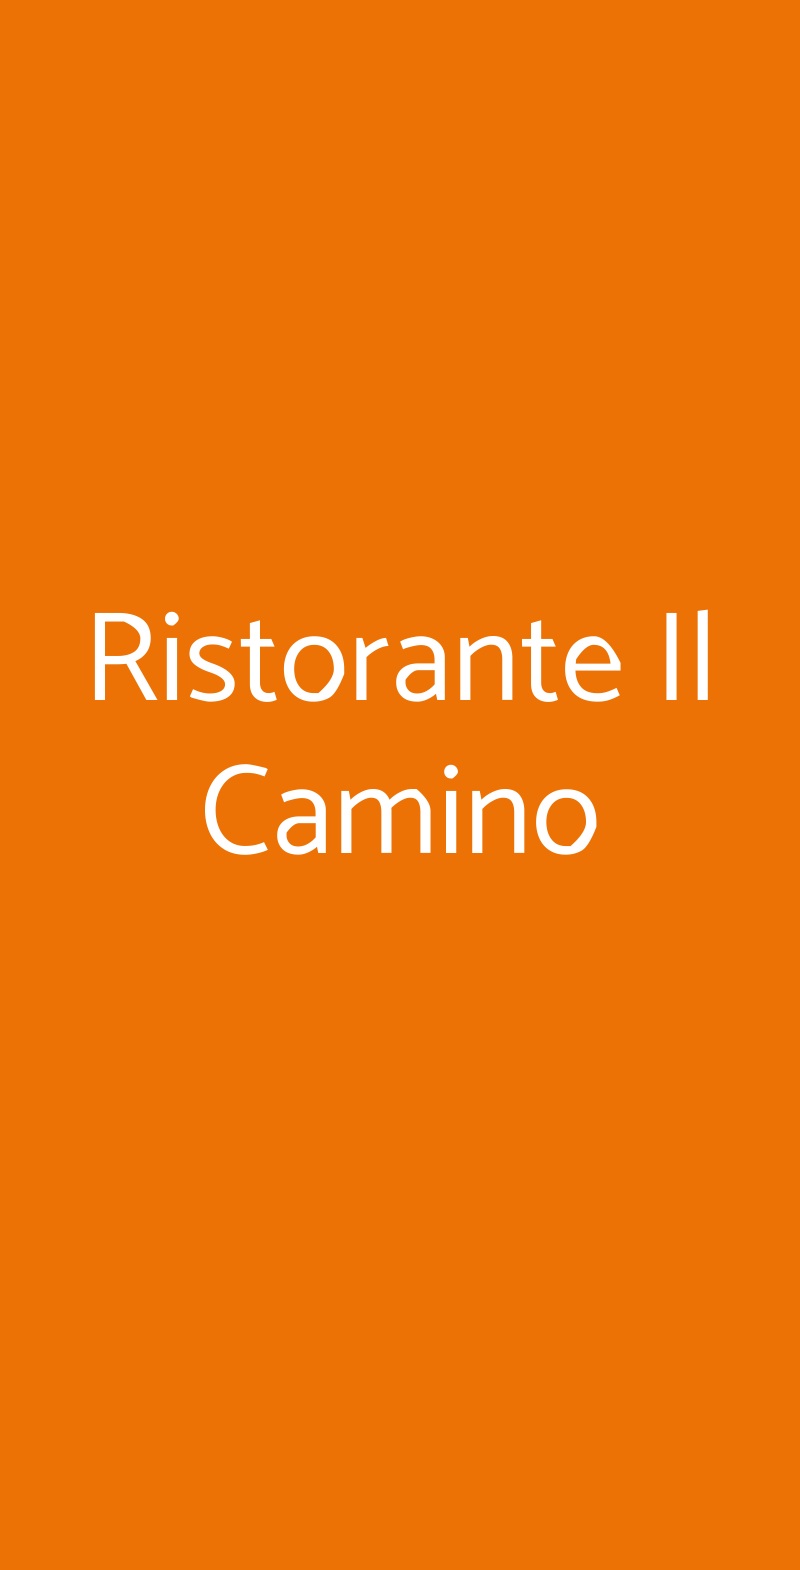 Ristorante Il Camino San Donato Milanese menù 1 pagina